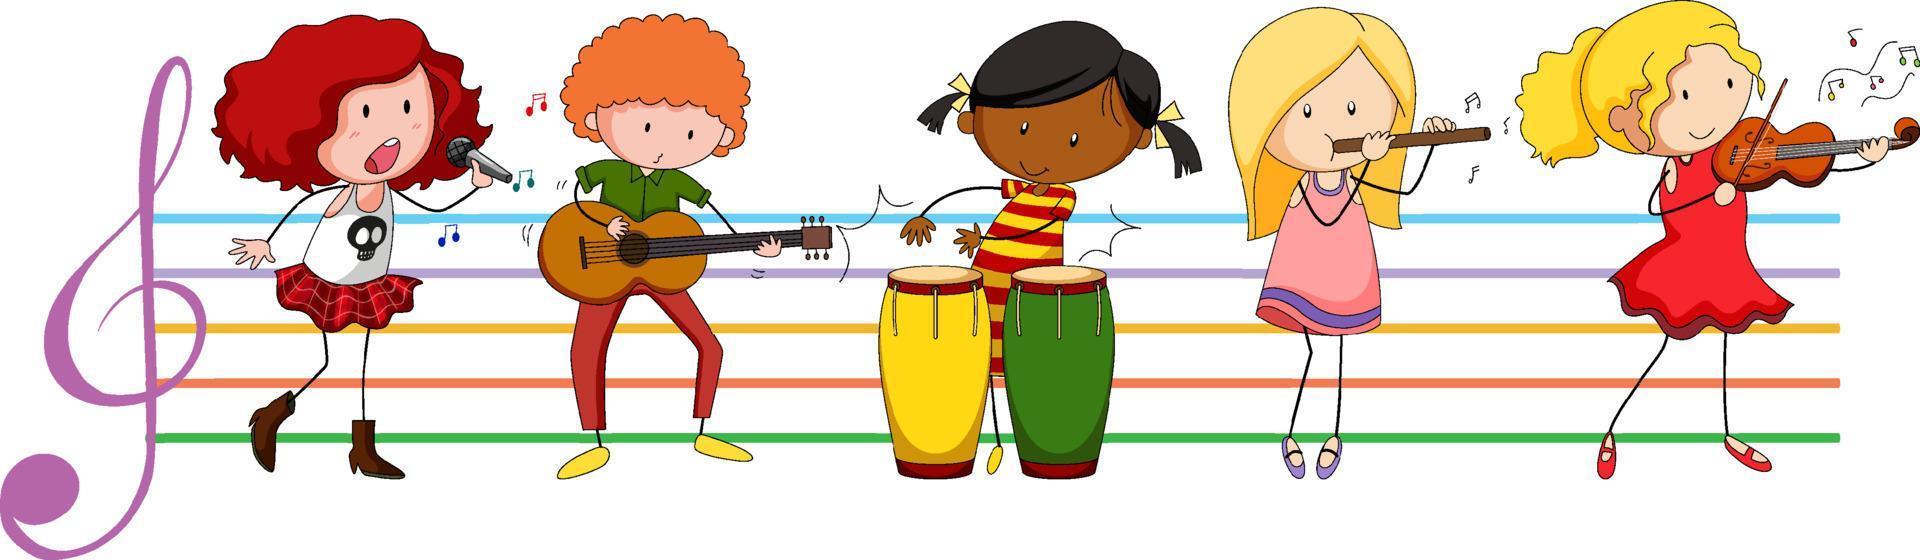 barn som spelar musikinstrument vektor